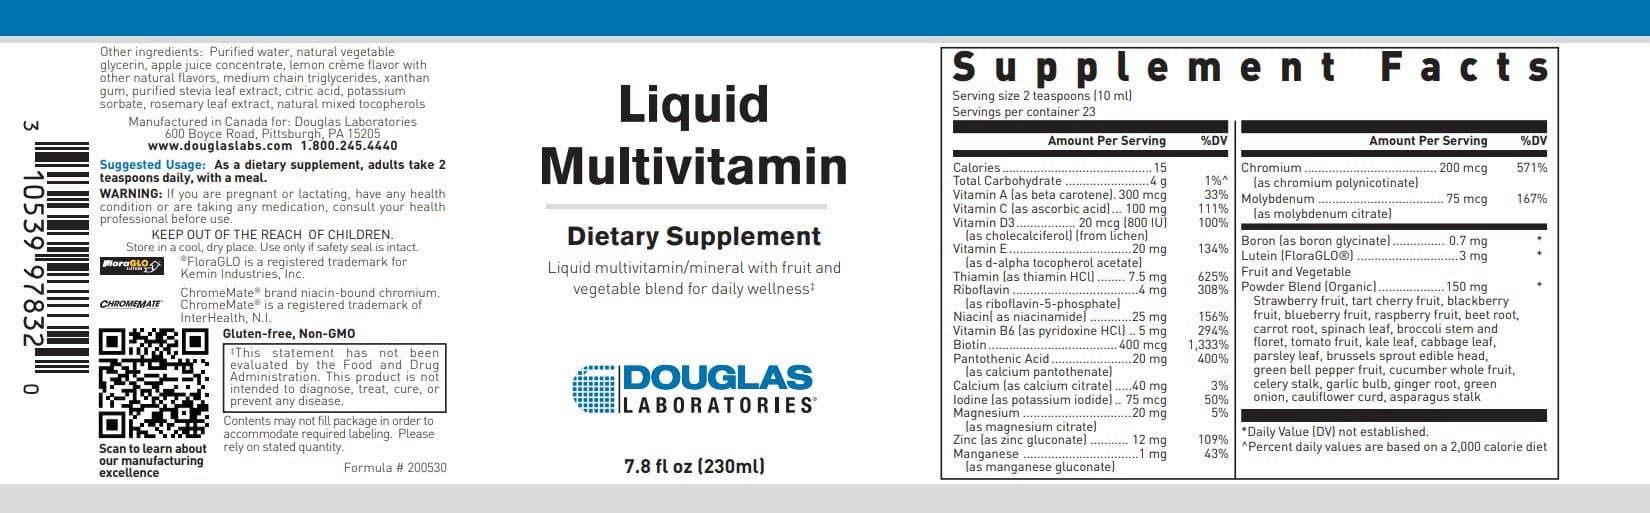 Douglas Laboratories Liquid Multivitamin Label